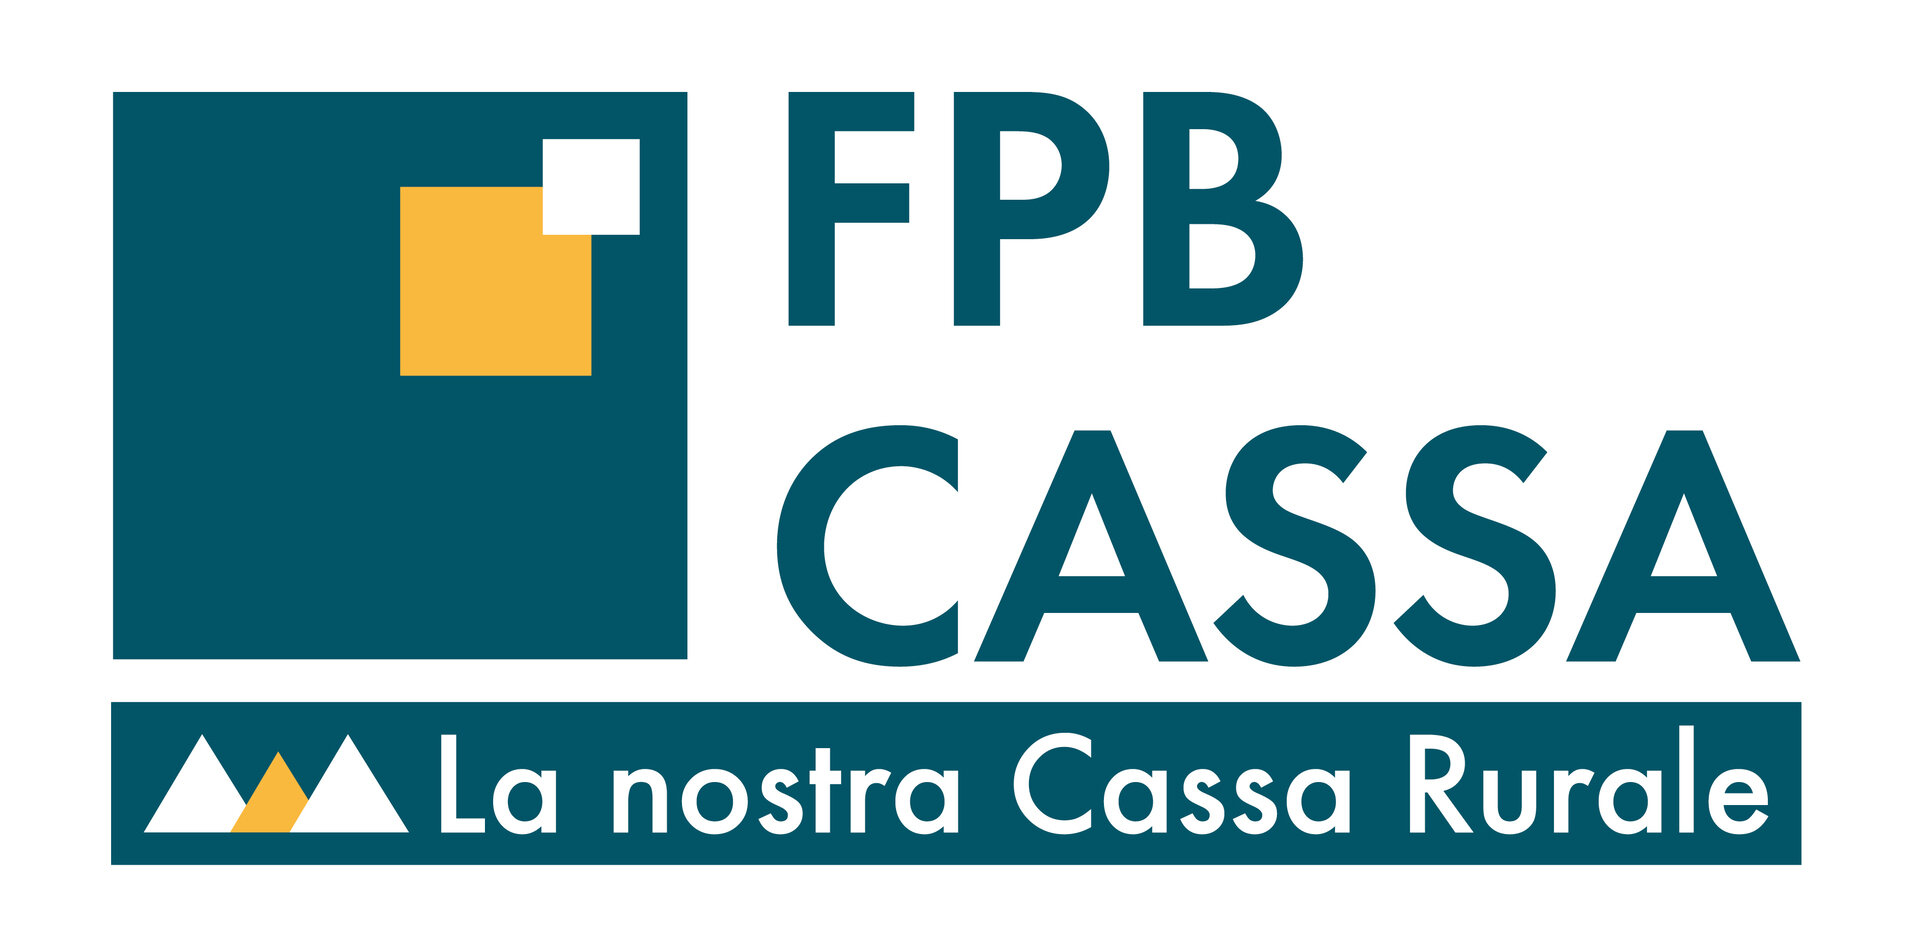 FPB Cassa Di Fassa Primiero Belluno   Filiale Di Canazei